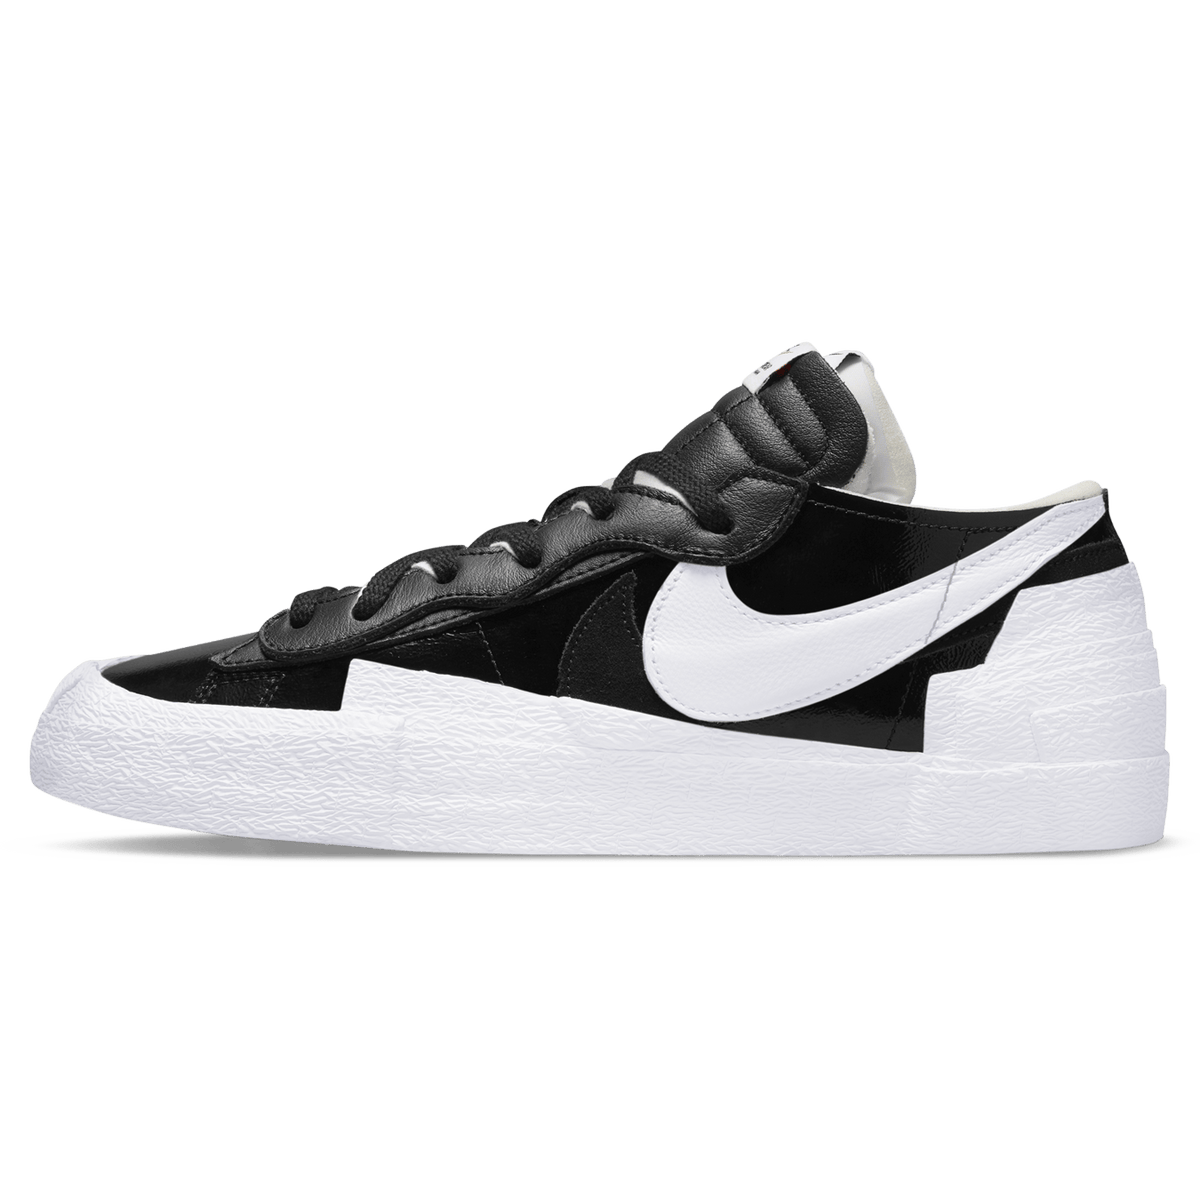 Kaws x sacai x Nike Blazer Low 'Black Patent' - Kick Game